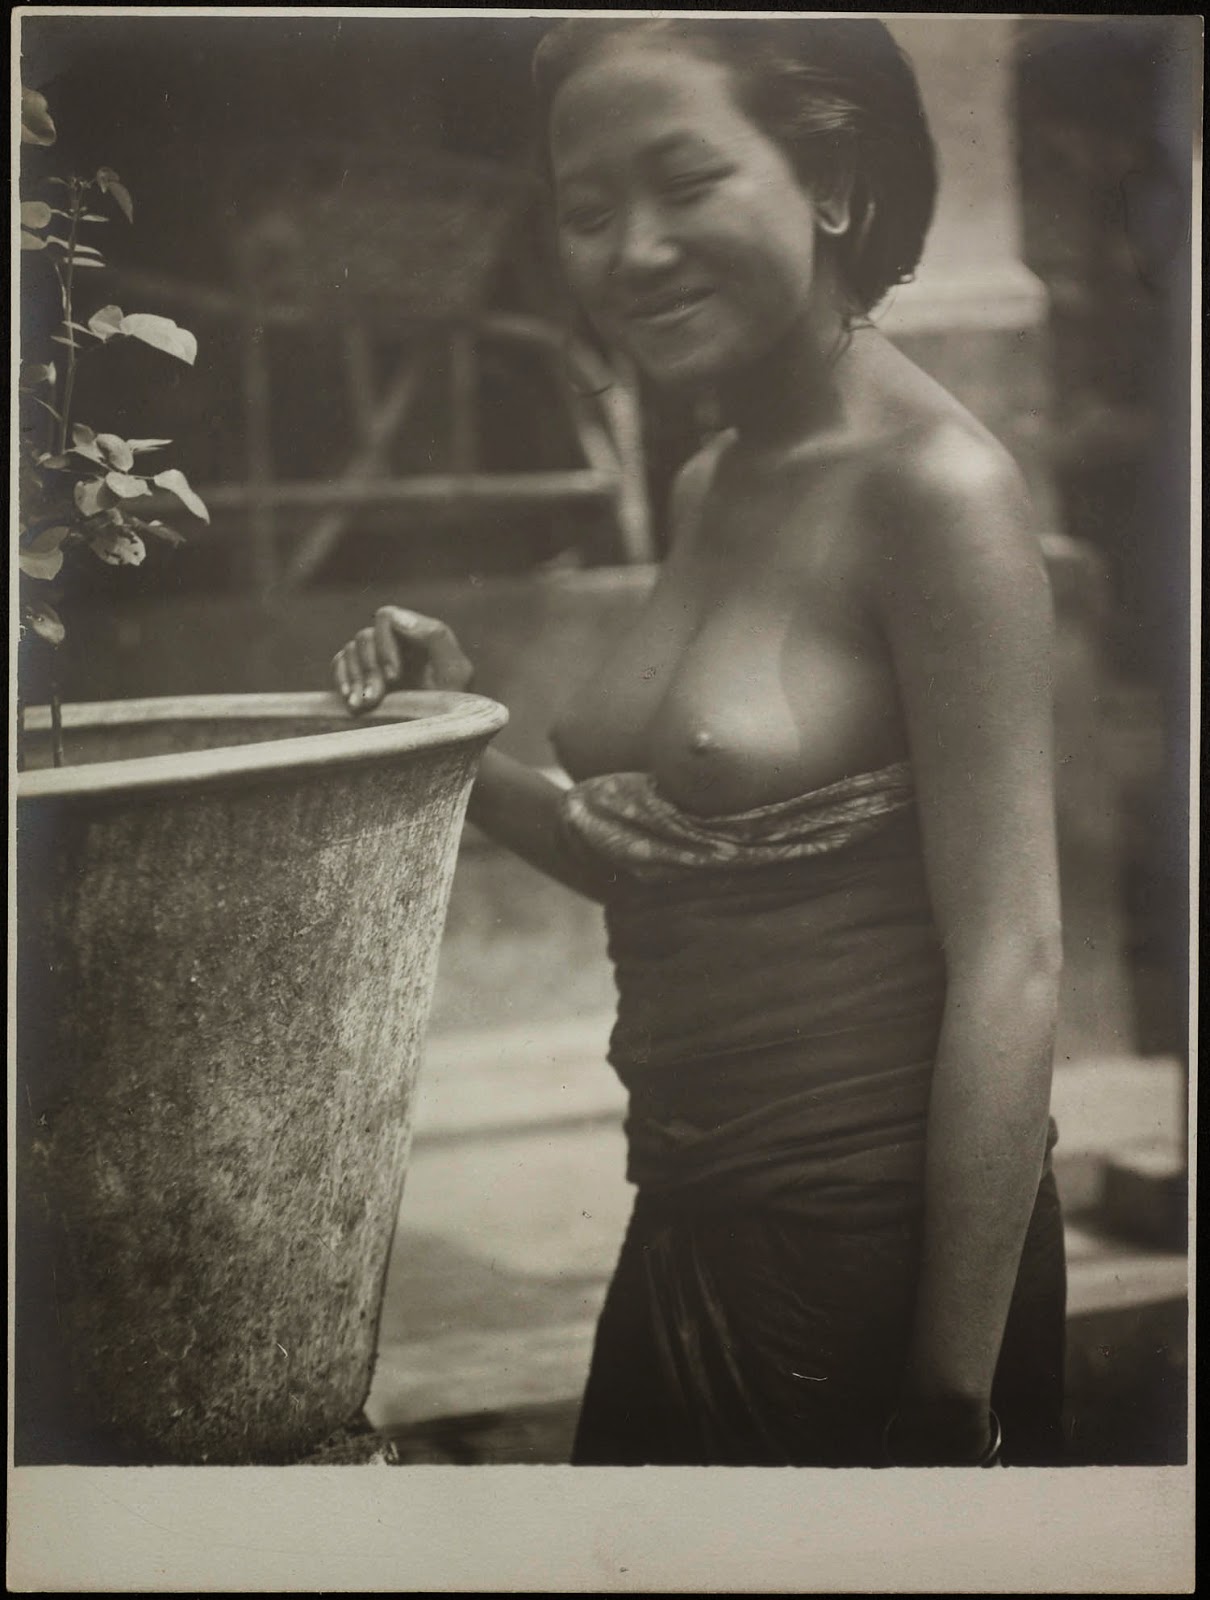 kumpulan-foto-gadis-bali-tempoe-doeloe-telanjang-dada-tahun-1910-1930-balinese-topless-girls-vintage-photography-31